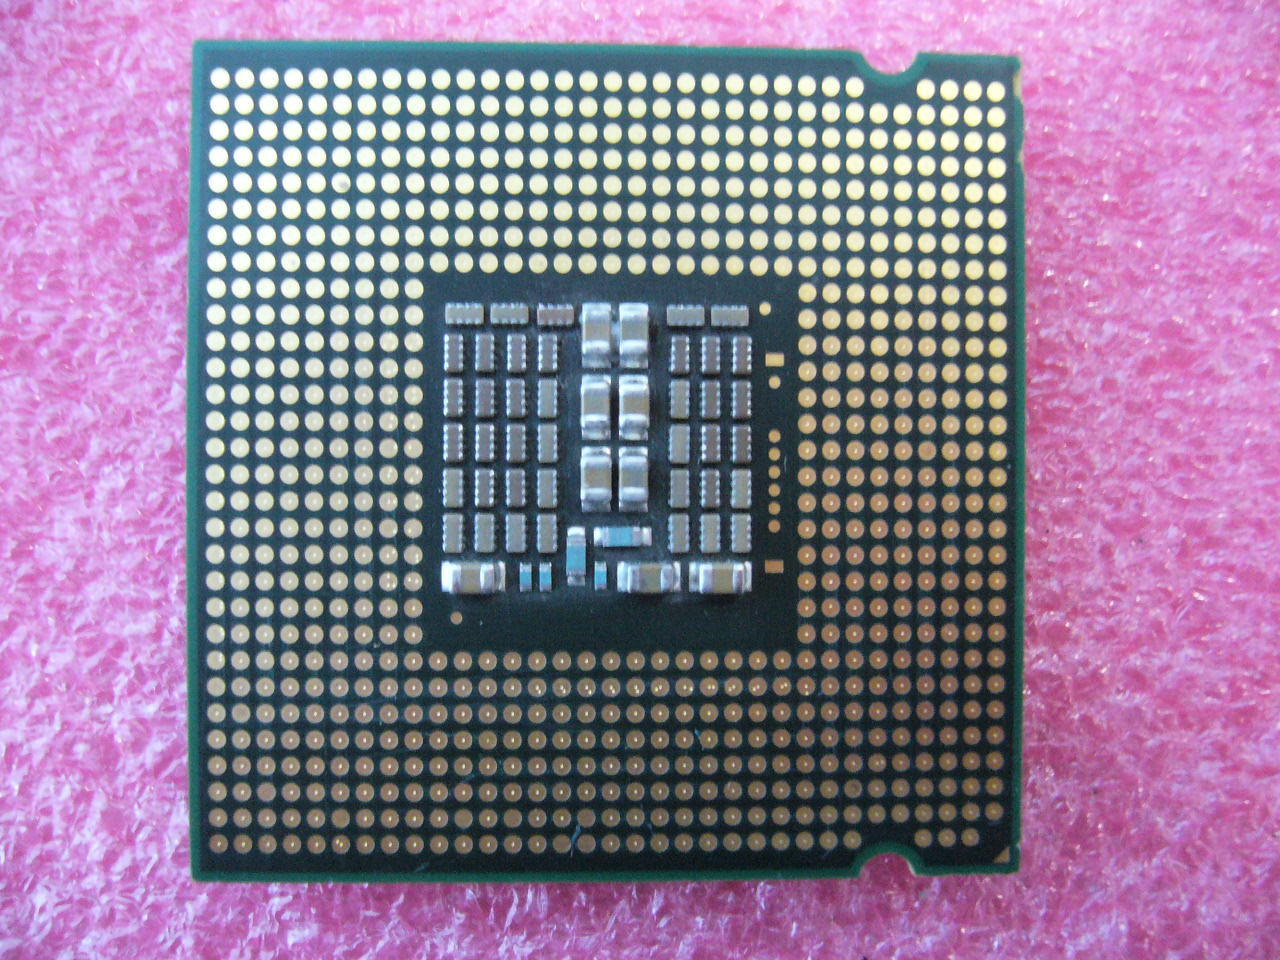 QTY 1x INTEL Quad Cores Q9450 CPU 2.66GHz/12MB/1333Mhz LGA775 SLAWR - zum Schließen ins Bild klicken